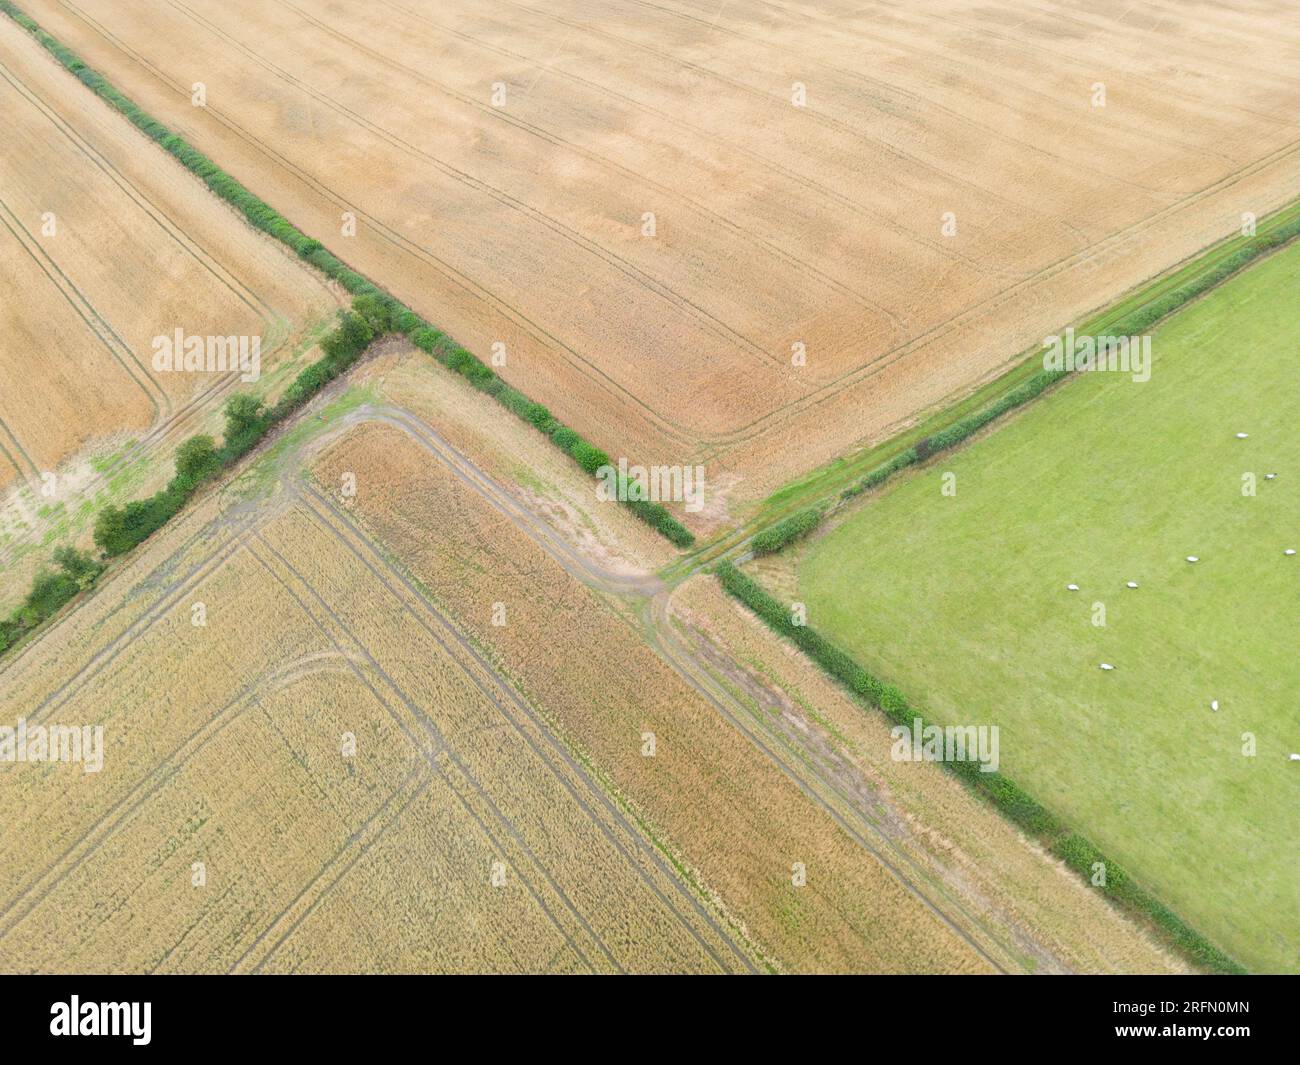 Immagini aeree di terreni agricoli britannici che mostrano i confini del campo e le tracce dei veicoli, South Shropshire, Inghilterra, Regno Unito Foto Stock